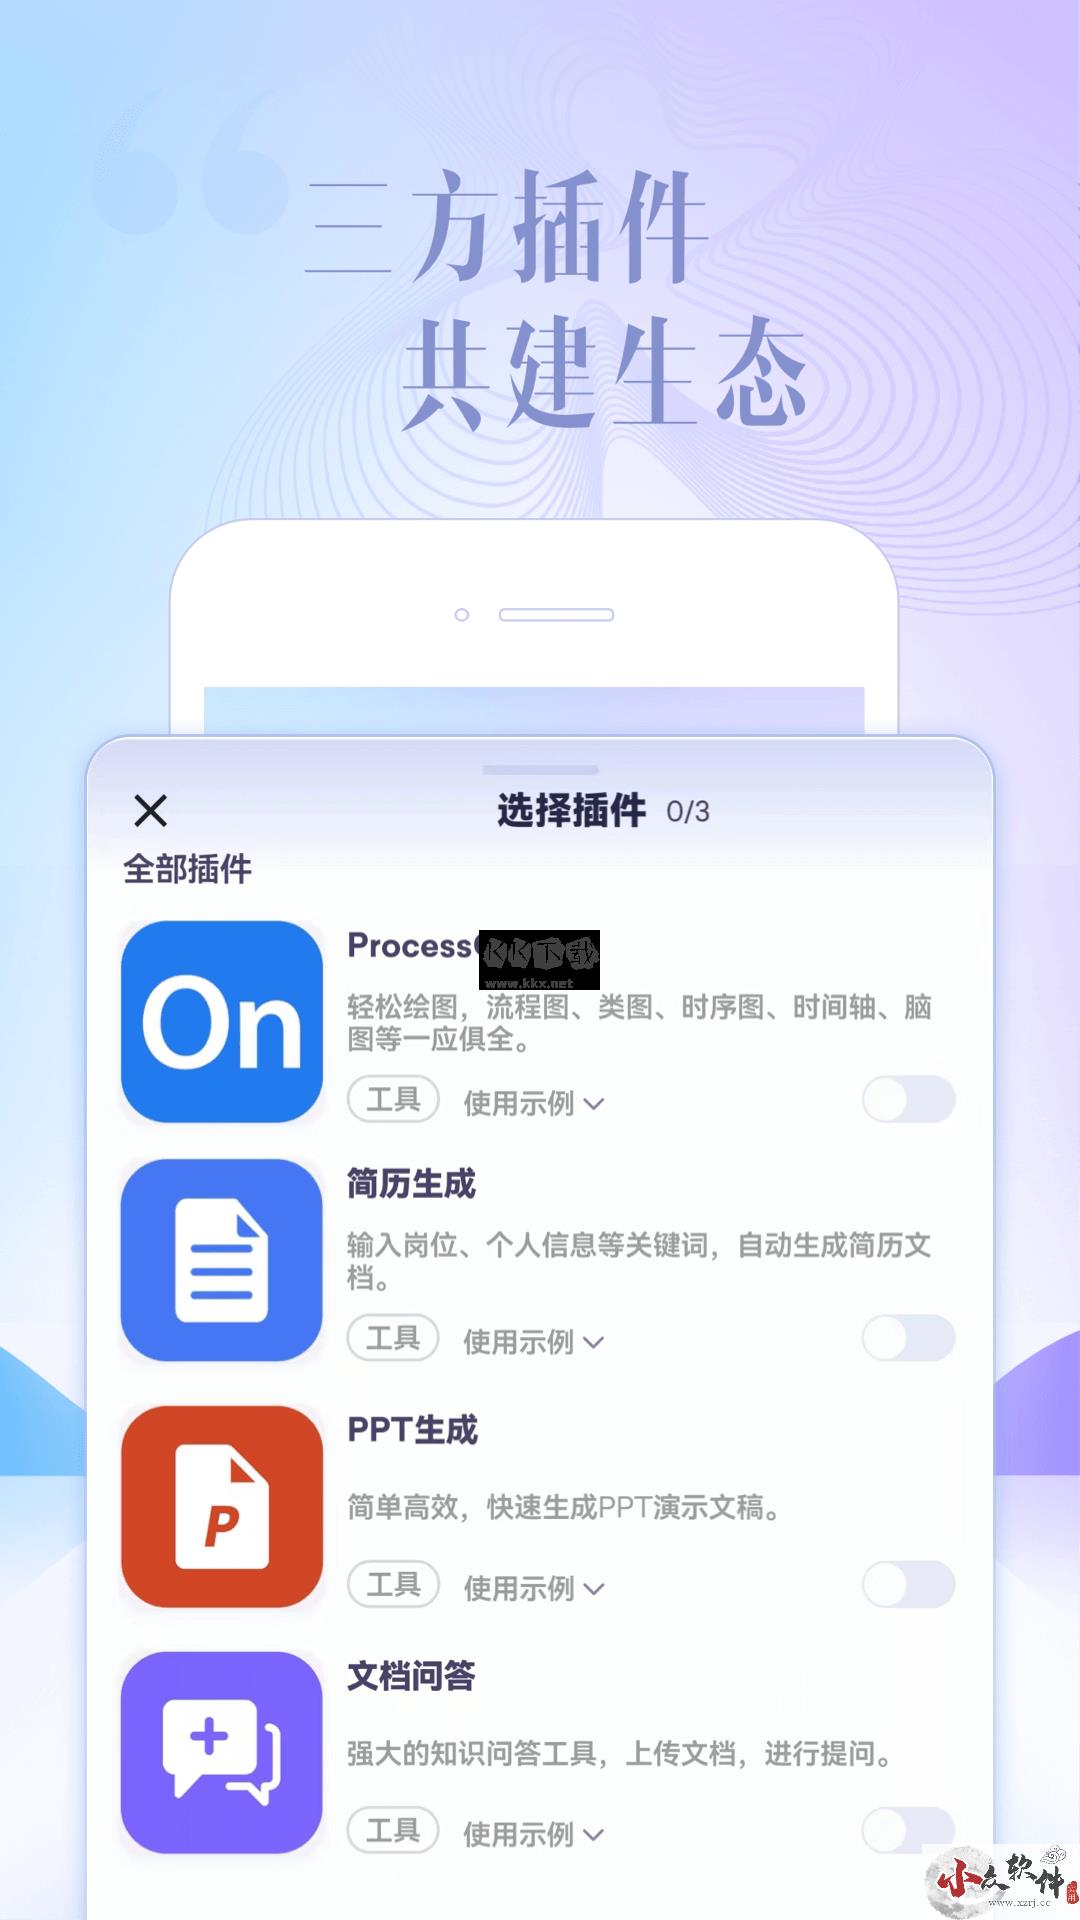 讯飞星火app官方最新版